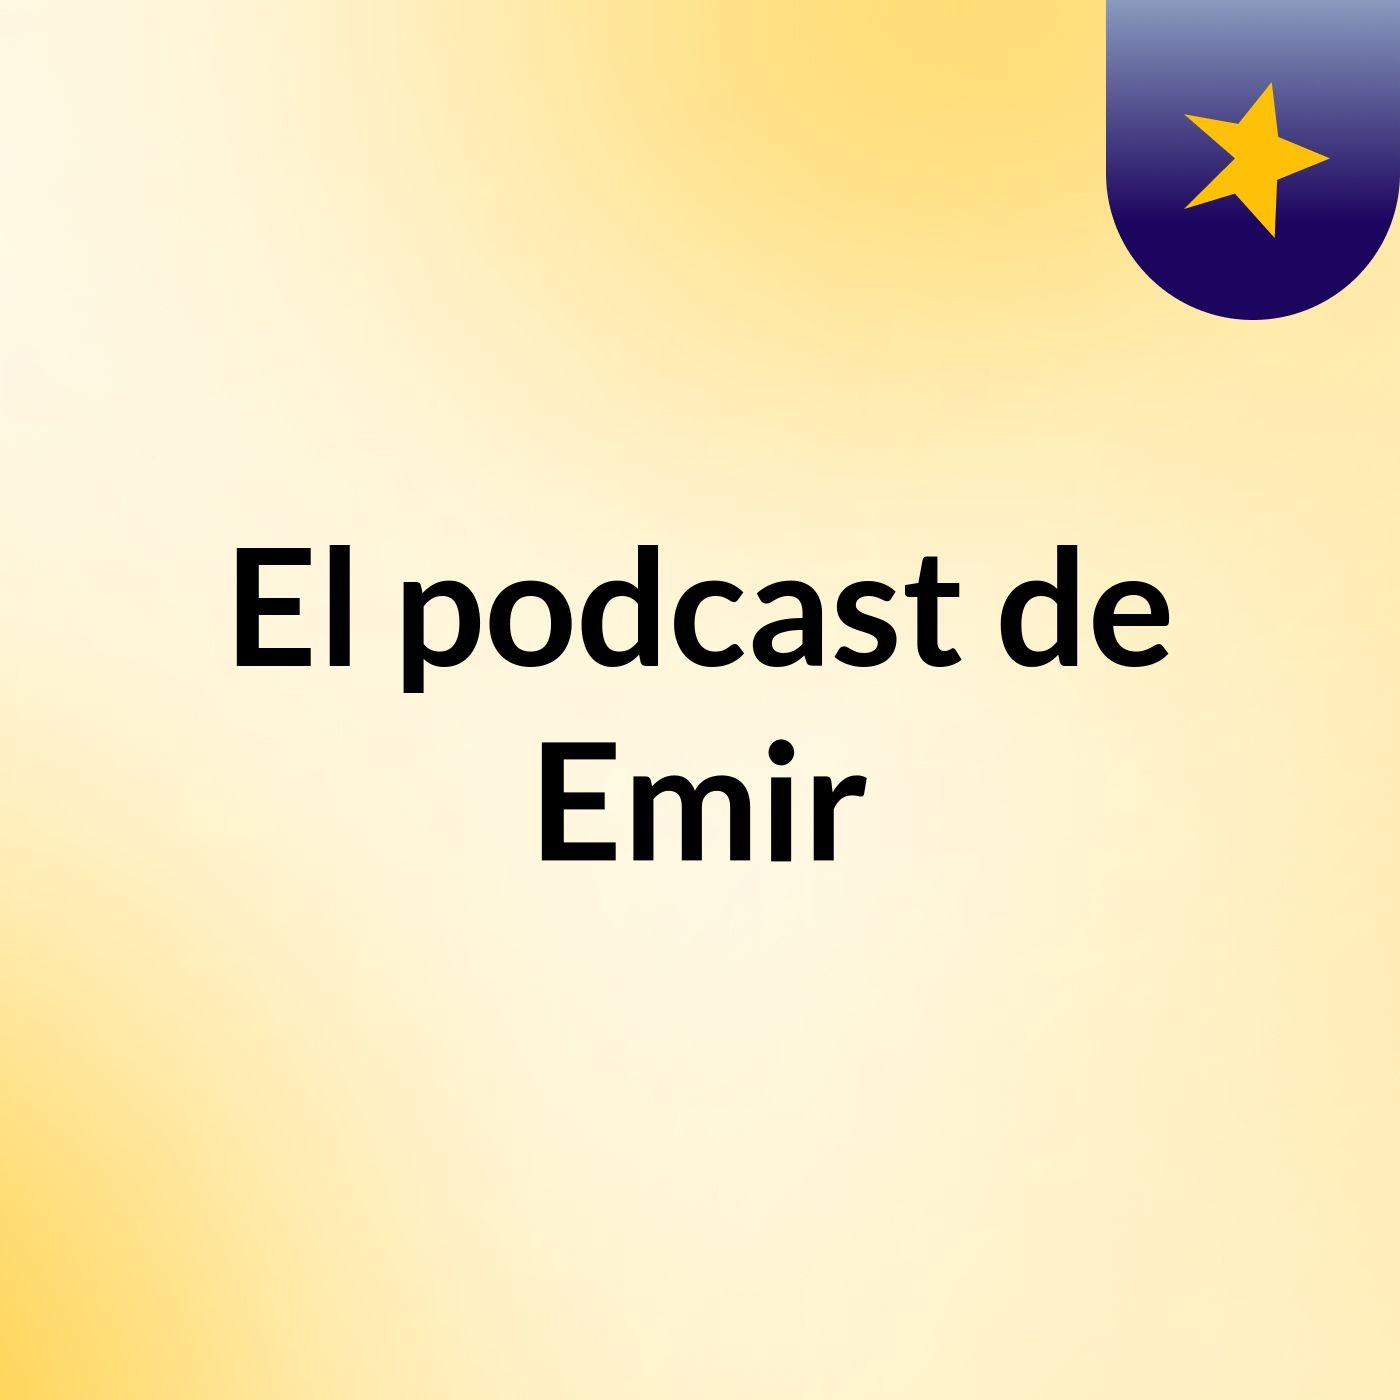 El podcast de Emir